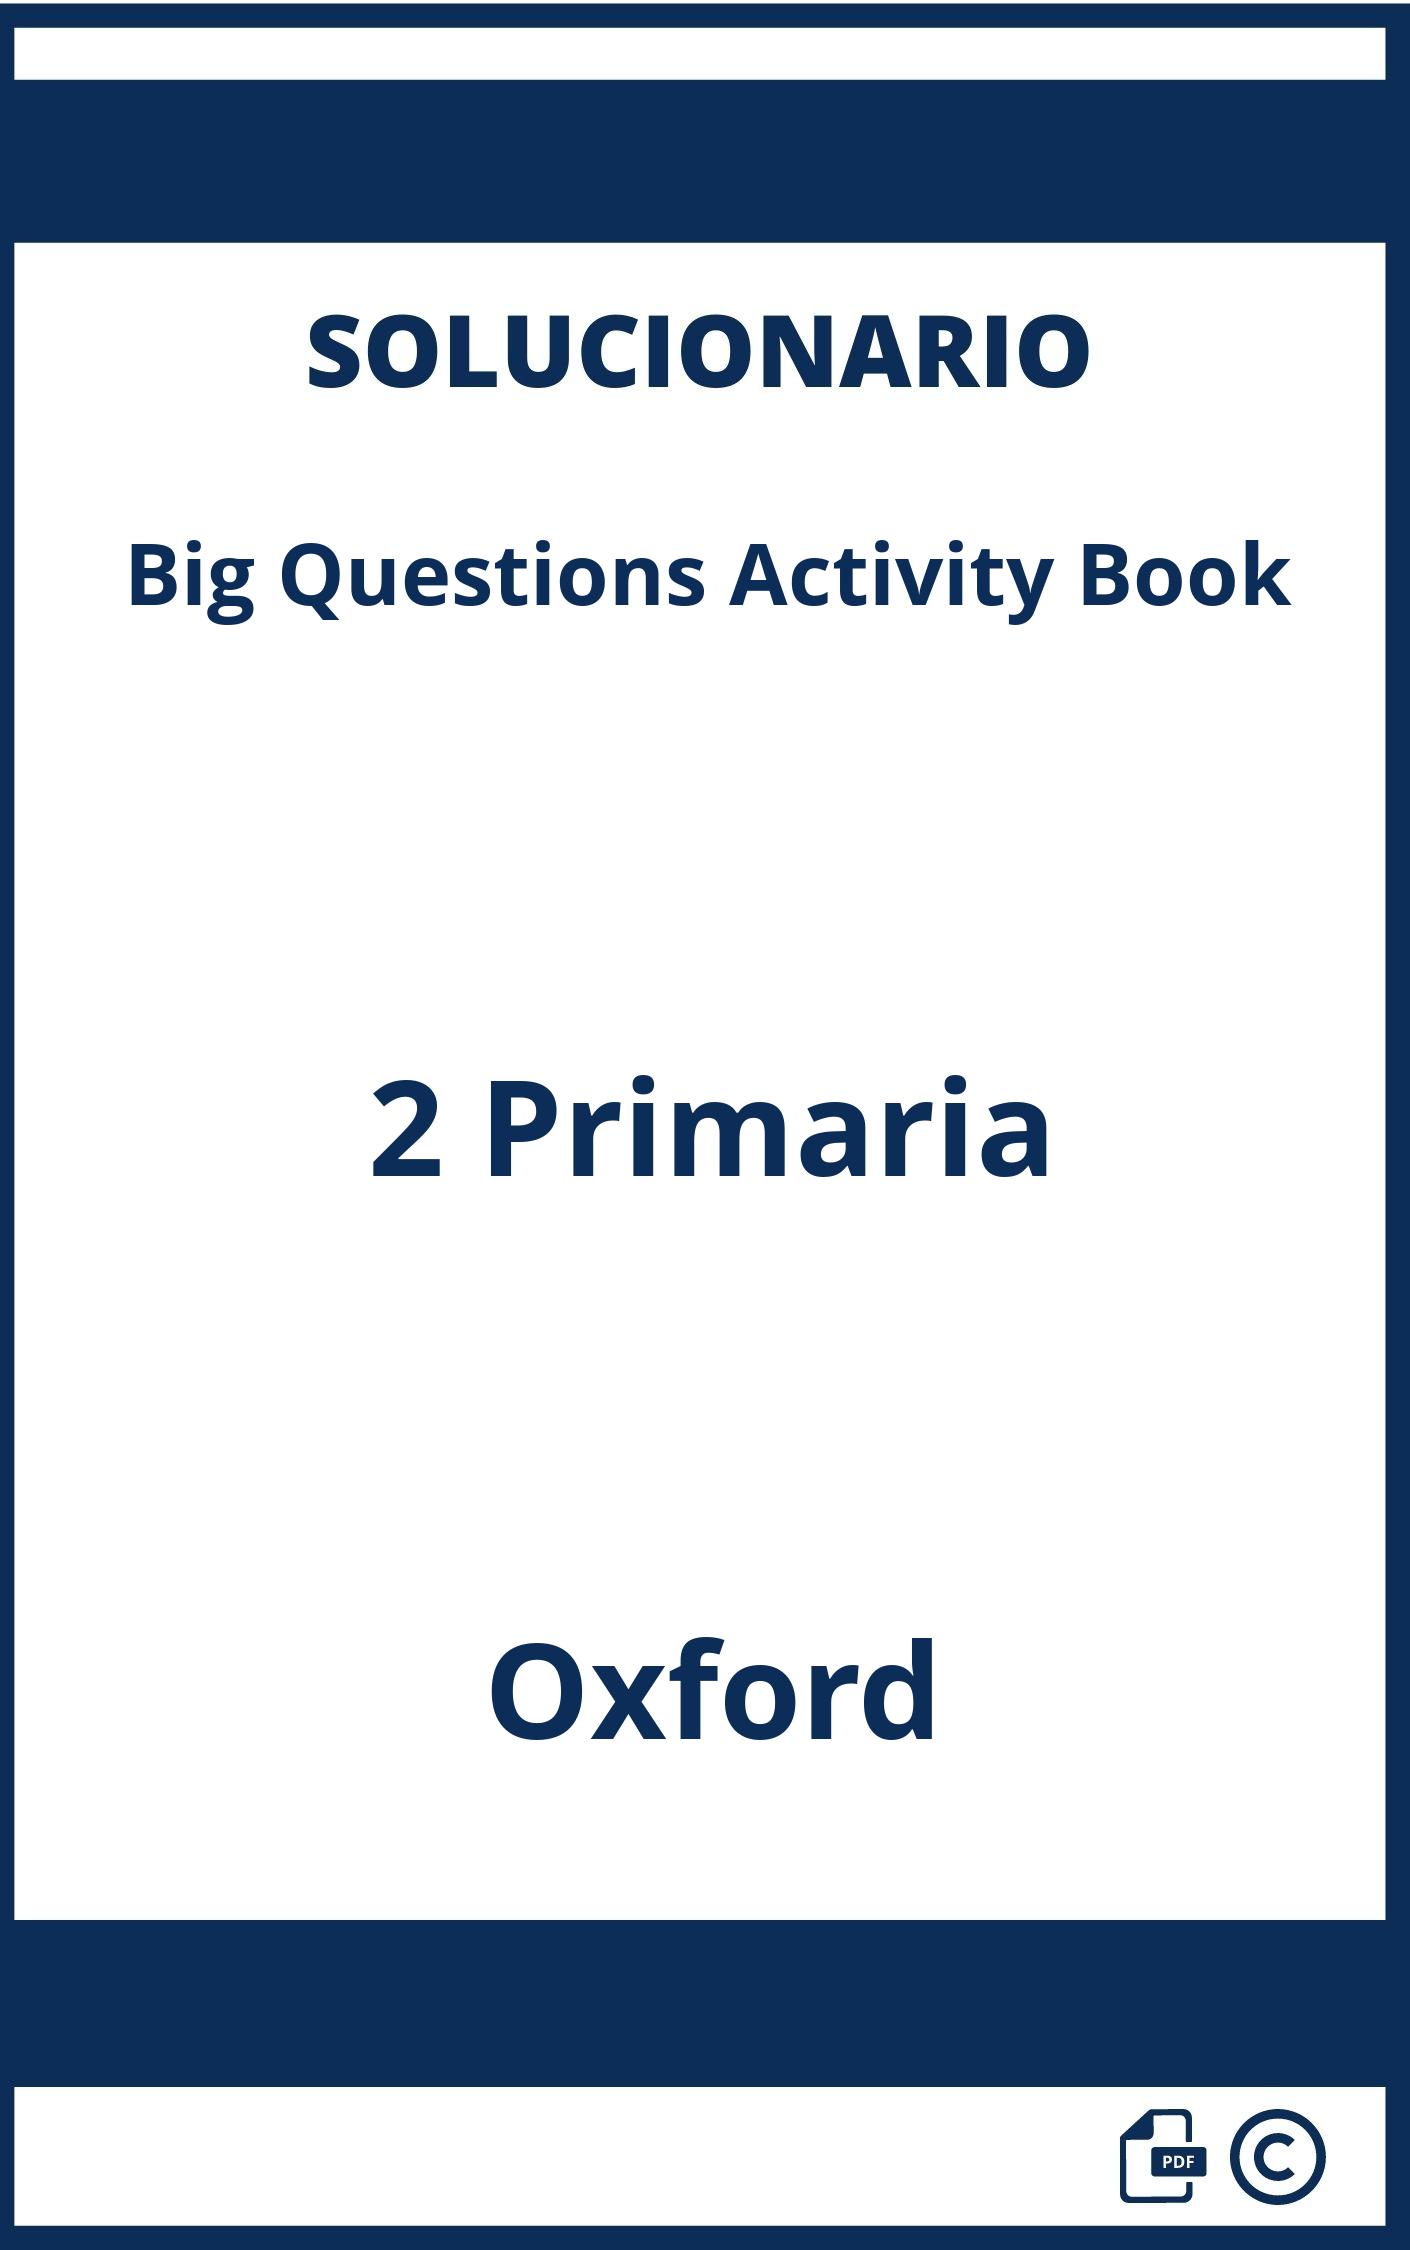 Solucionario Big Questions Activity Book 2 Primaria Oxford